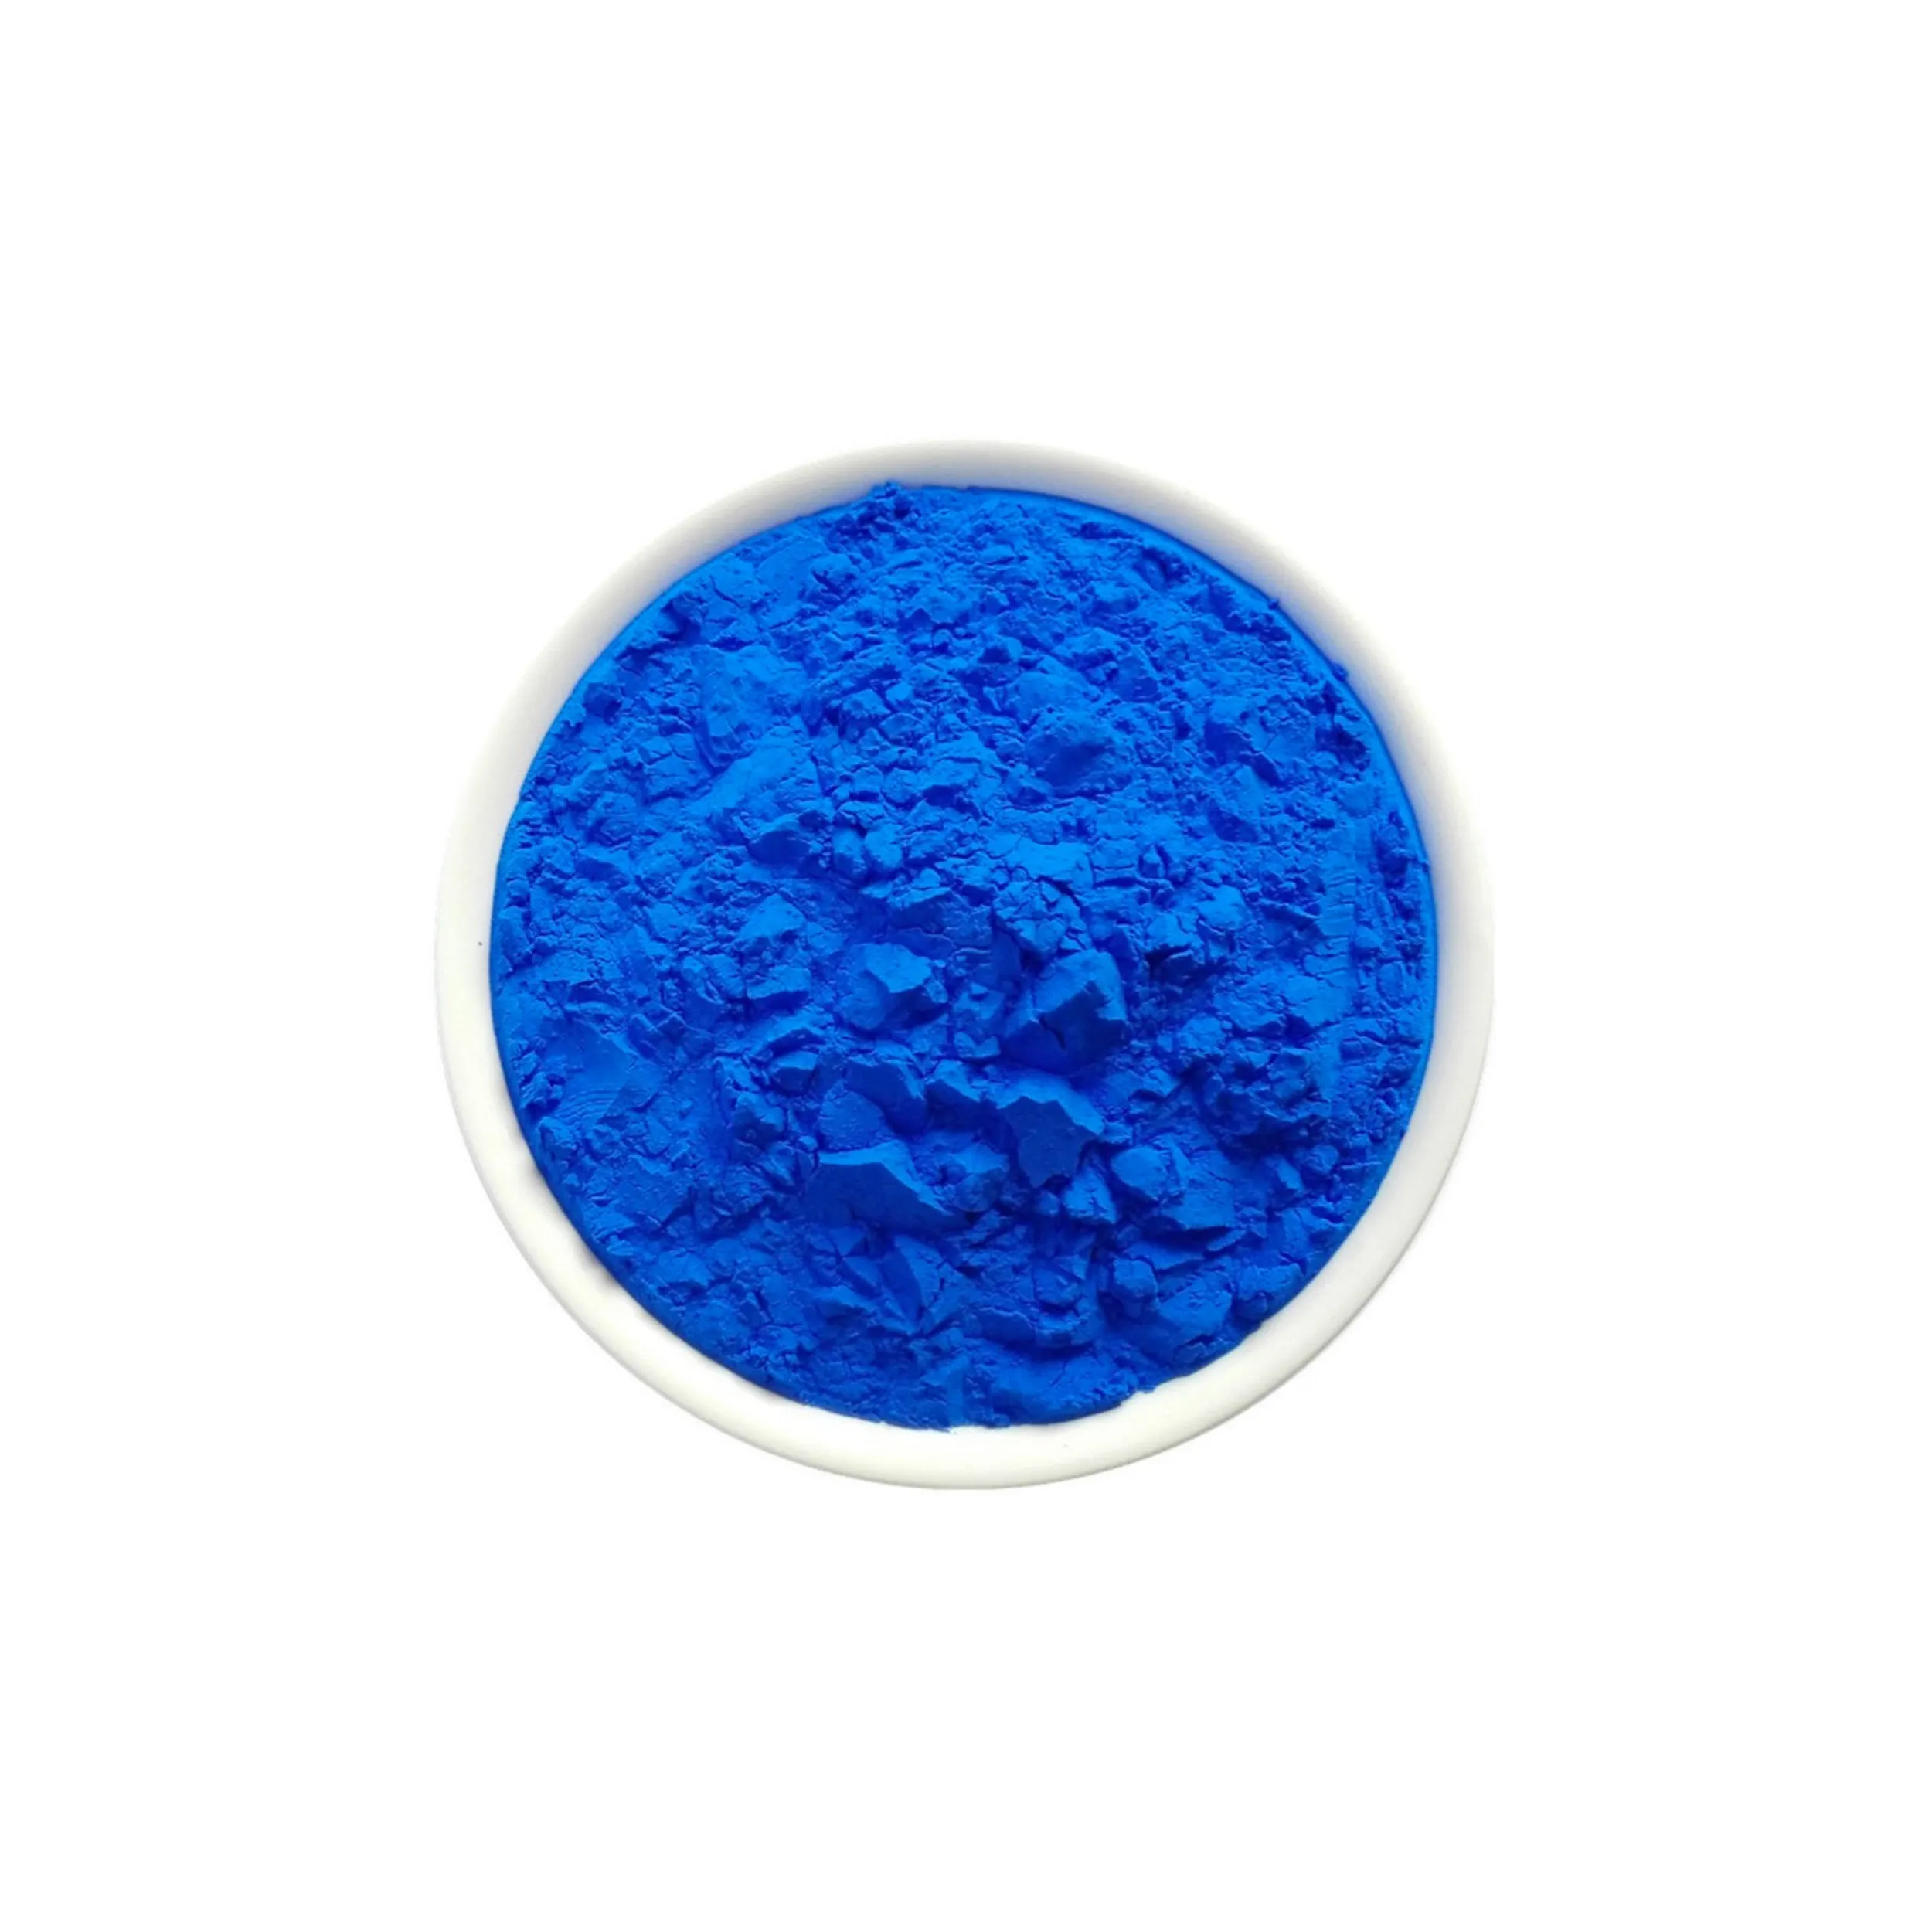 Spot goods pigmen biru 15:3 pewarna cas 147-14-8 yang bisa digunakan untuk mewarnai cat, tinta, plastik dan karet